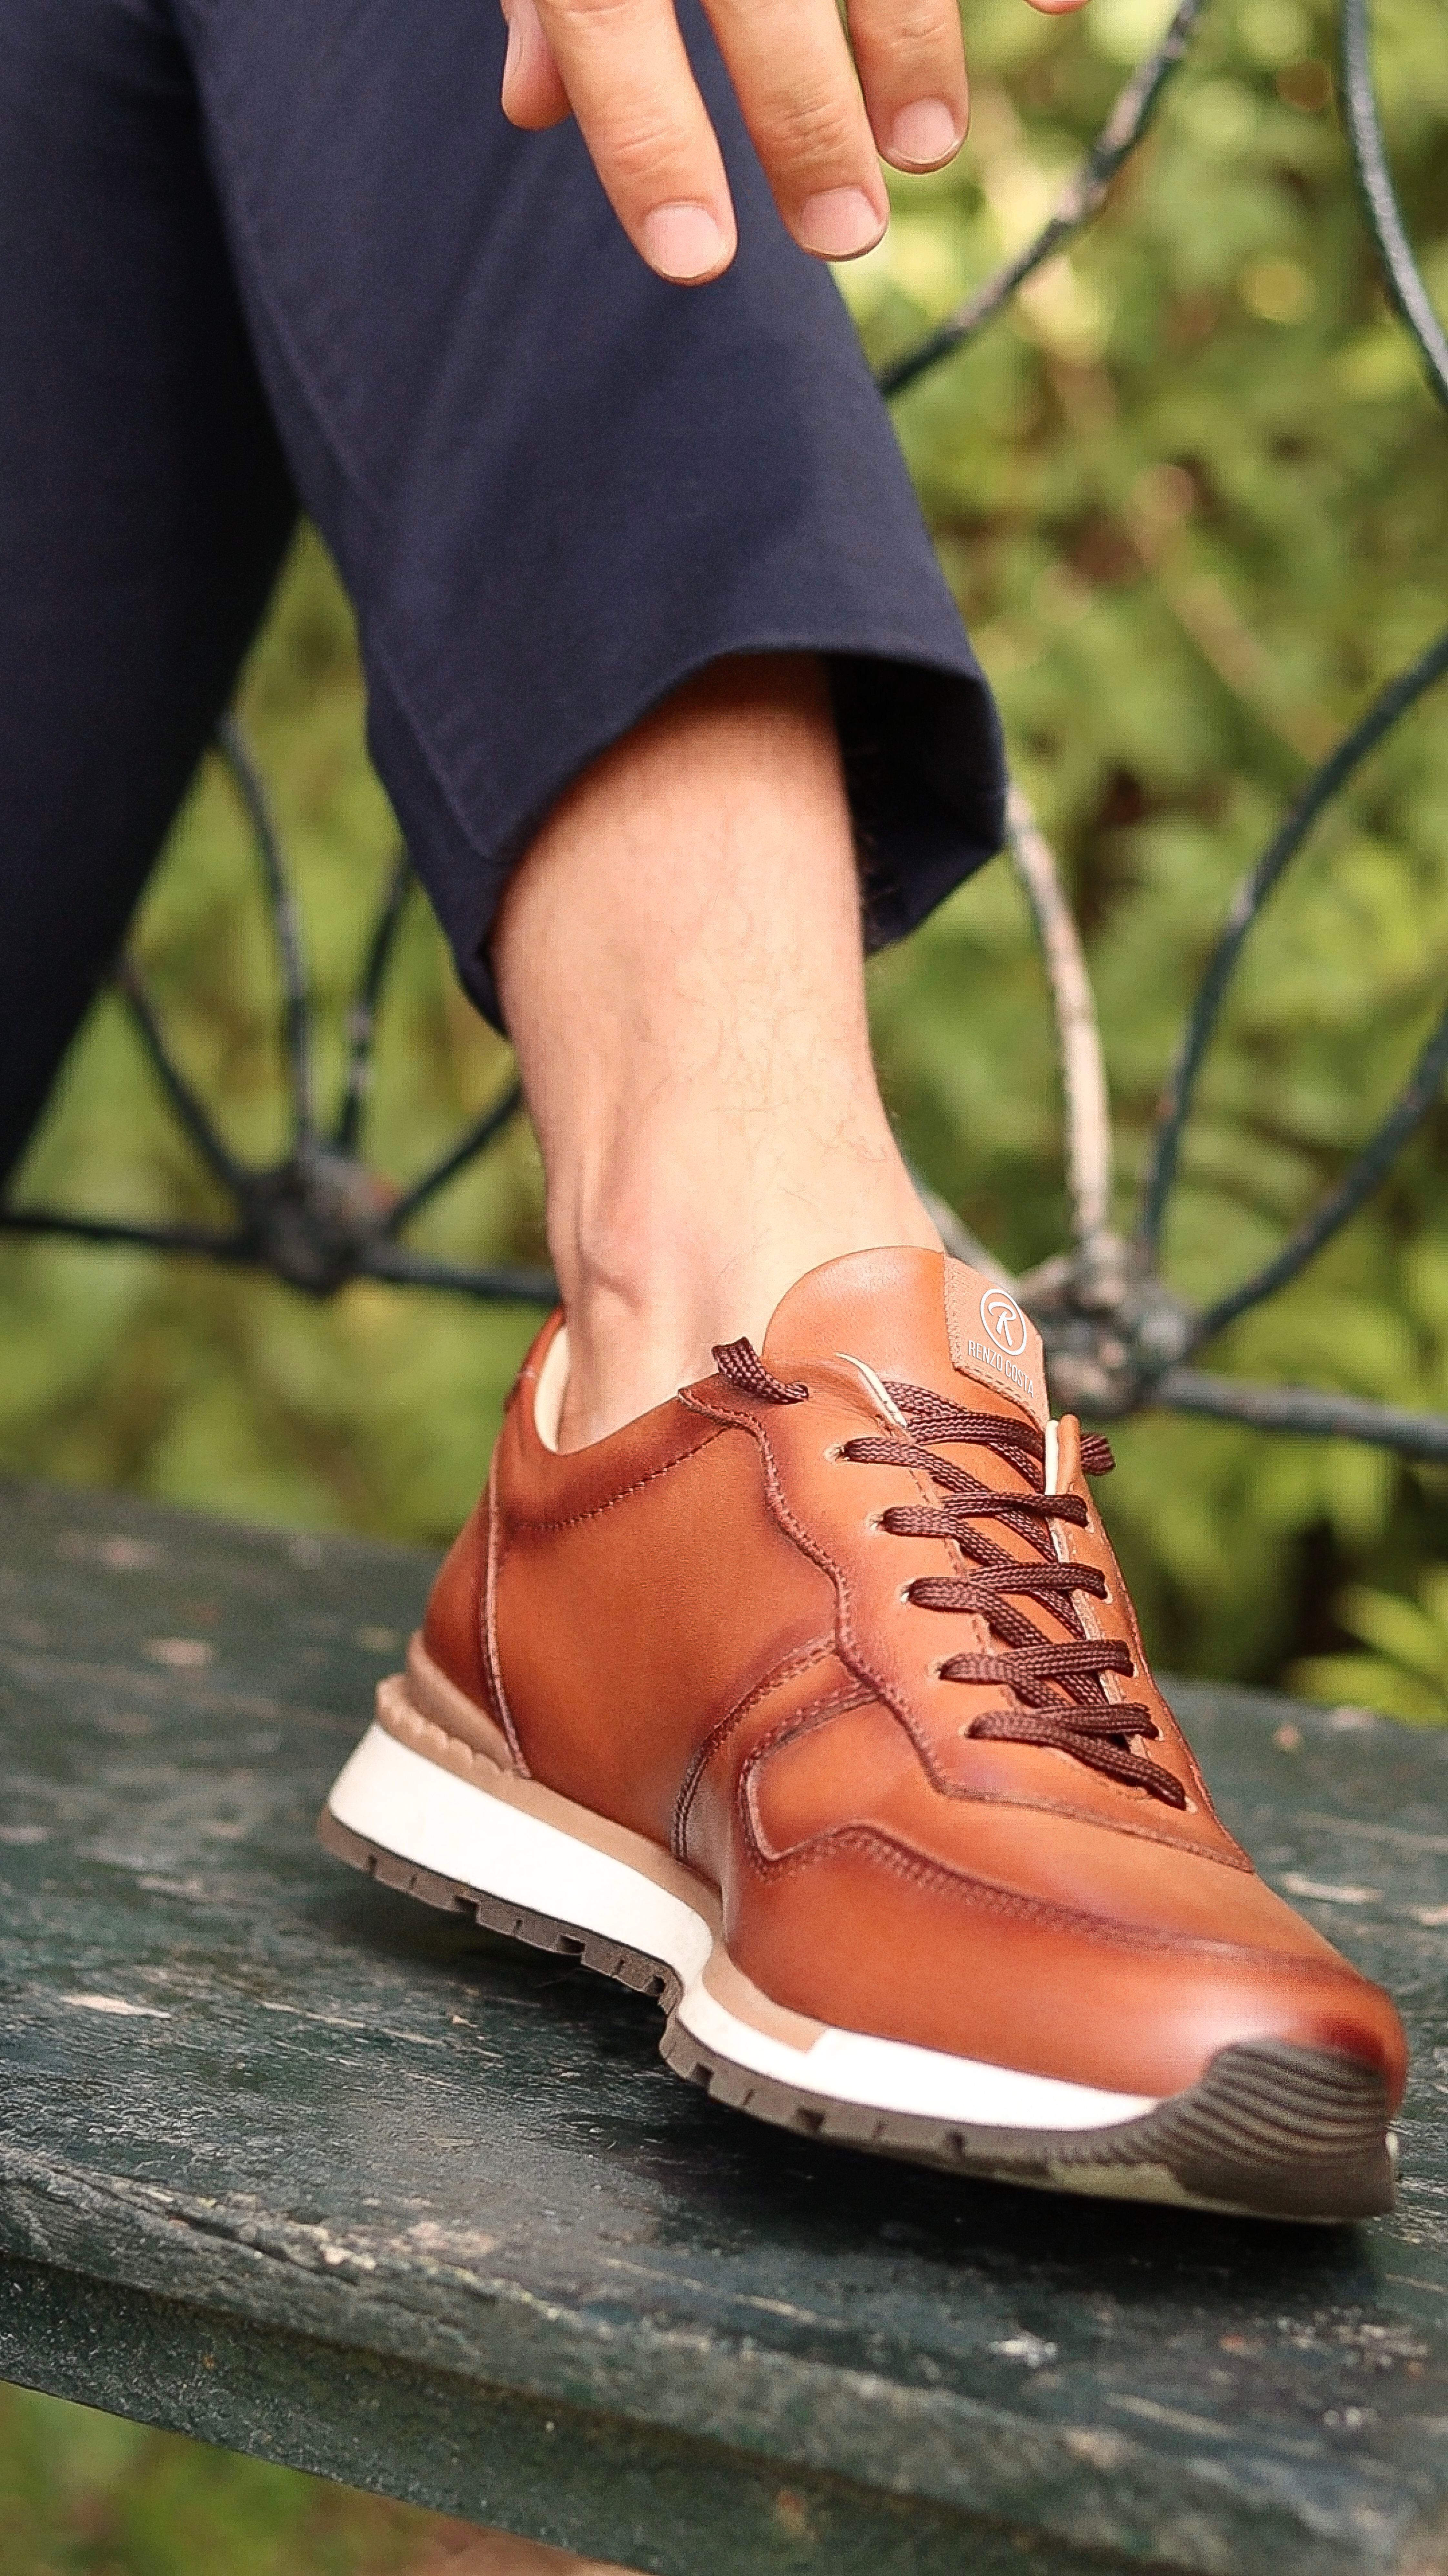 Un calzado hibrido, es un calzado de vestir y sport a la vez que incluye pequeñas perforaciones como el pespunteado doble a lo largo de la puntera. Foto: Difusión